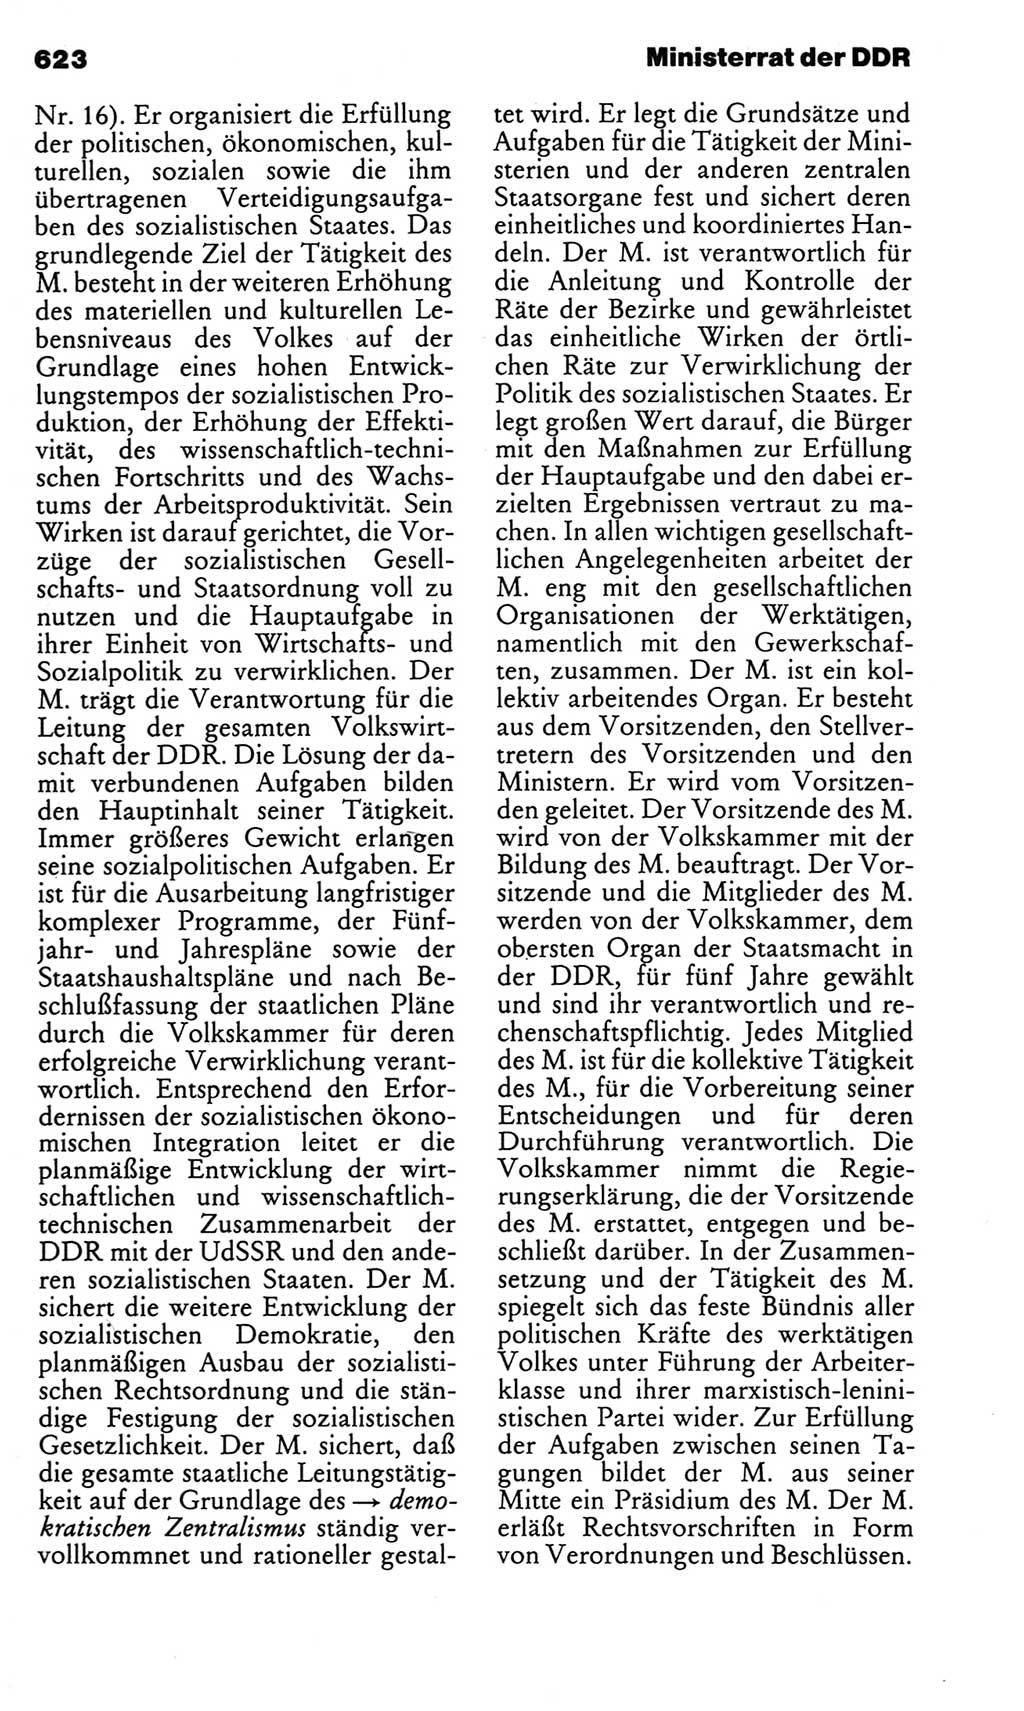 Kleines politisches Wörterbuch [Deutsche Demokratische Republik (DDR)] 1983, Seite 623 (Kl. pol. Wb. DDR 1983, S. 623)